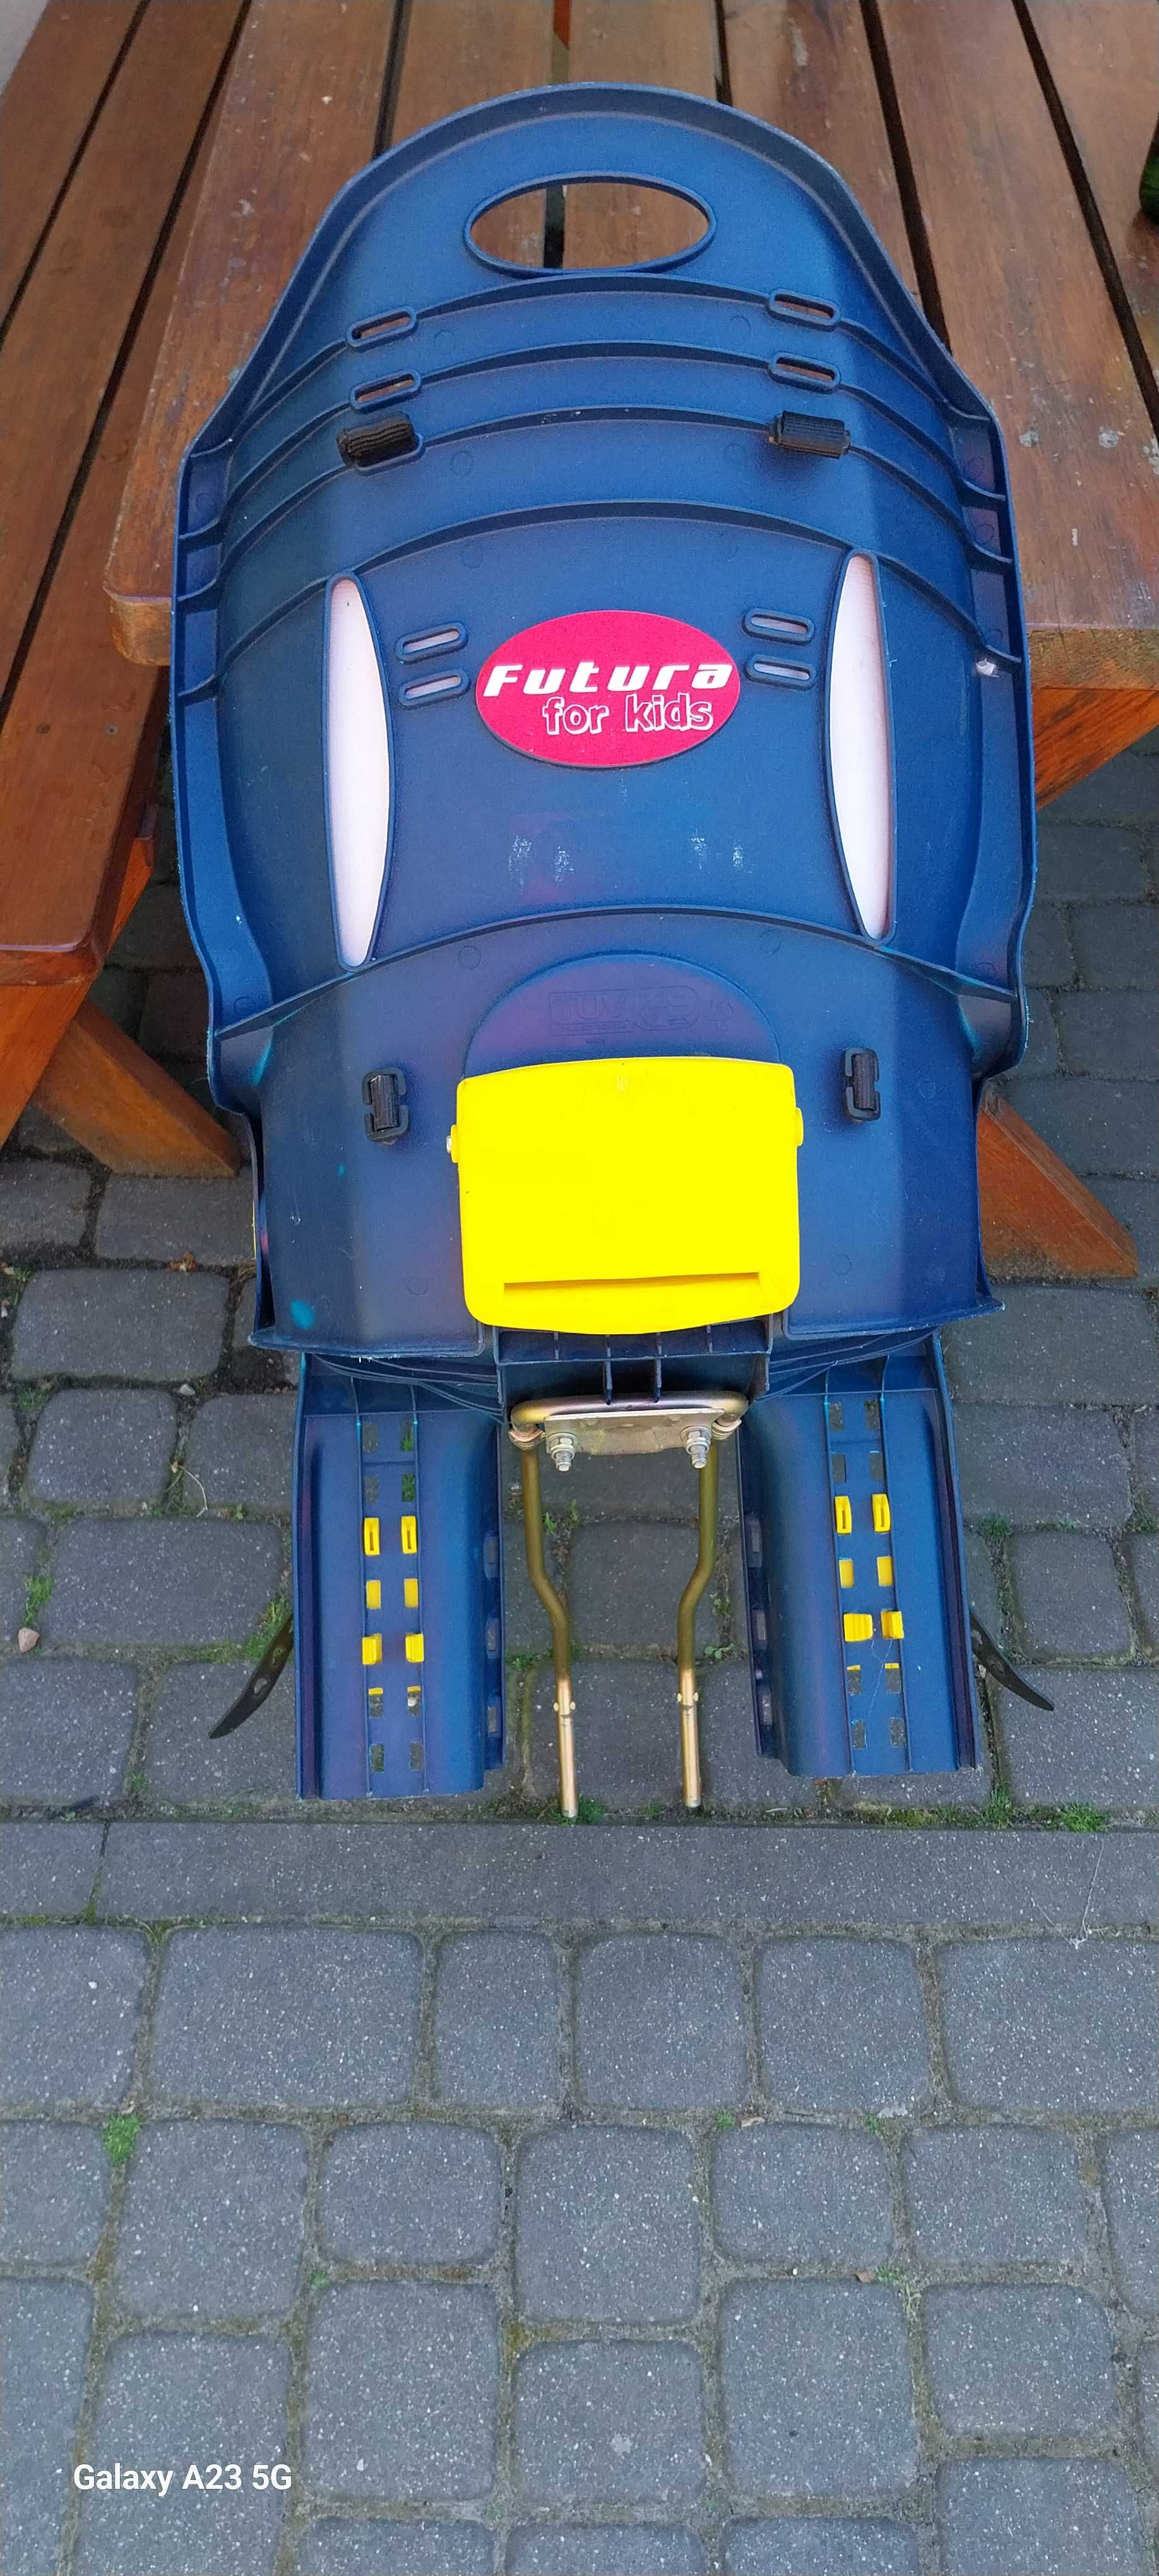 Fotelik na rower dla dzieci - Futura for Kids